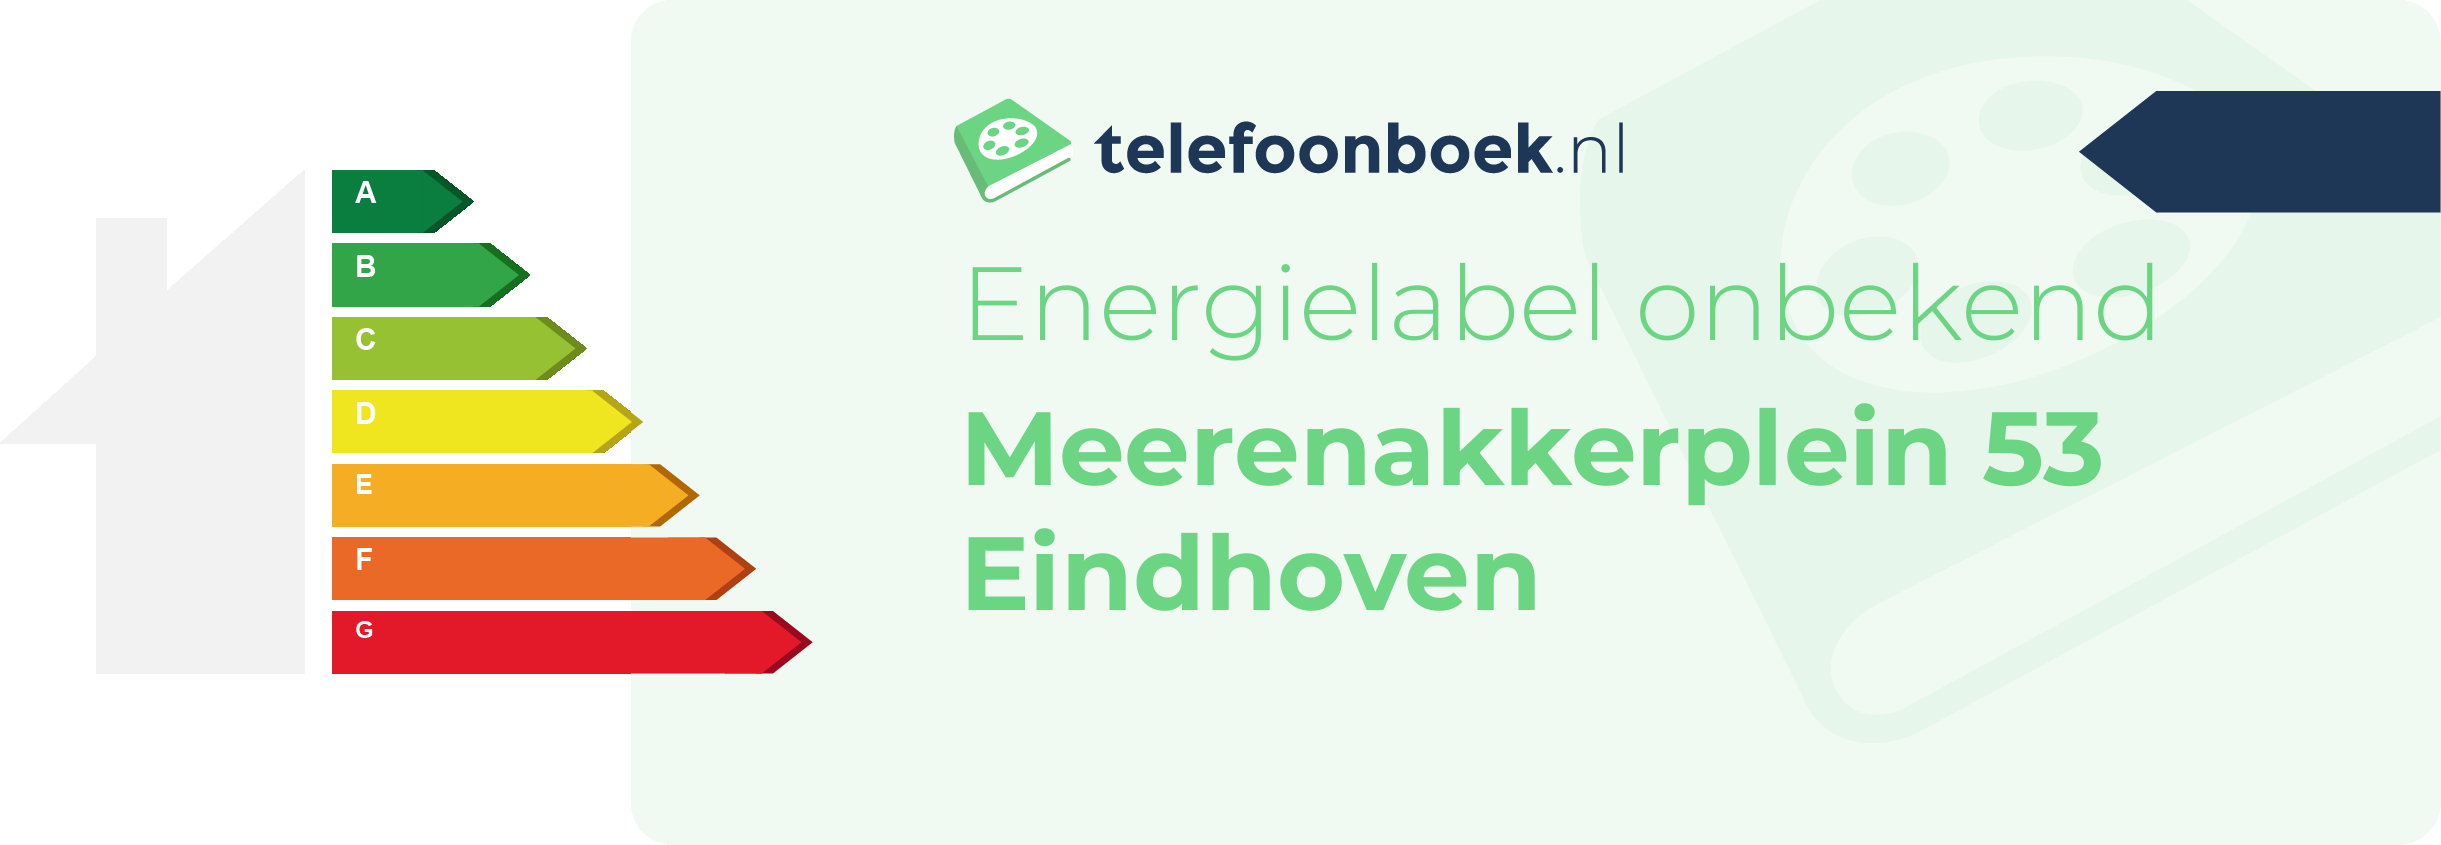 Energielabel Meerenakkerplein 53 Eindhoven